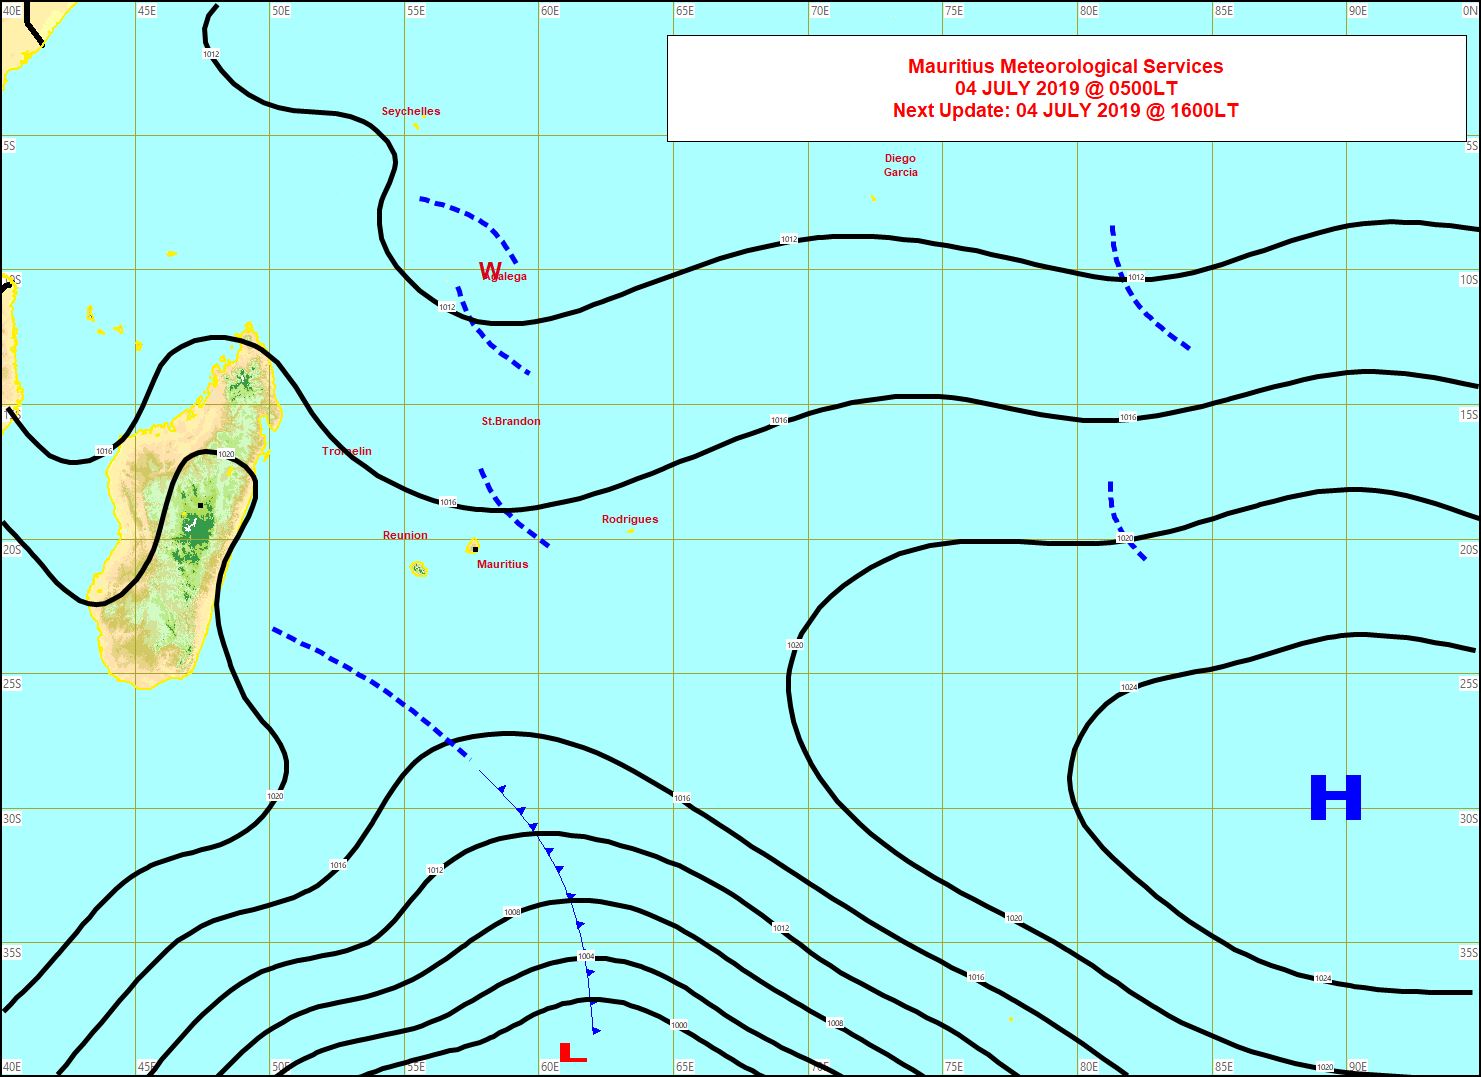 Analyse de la situation de surface ce matin. Un peu d'instabliité à l'Est de MAURICE. MMS